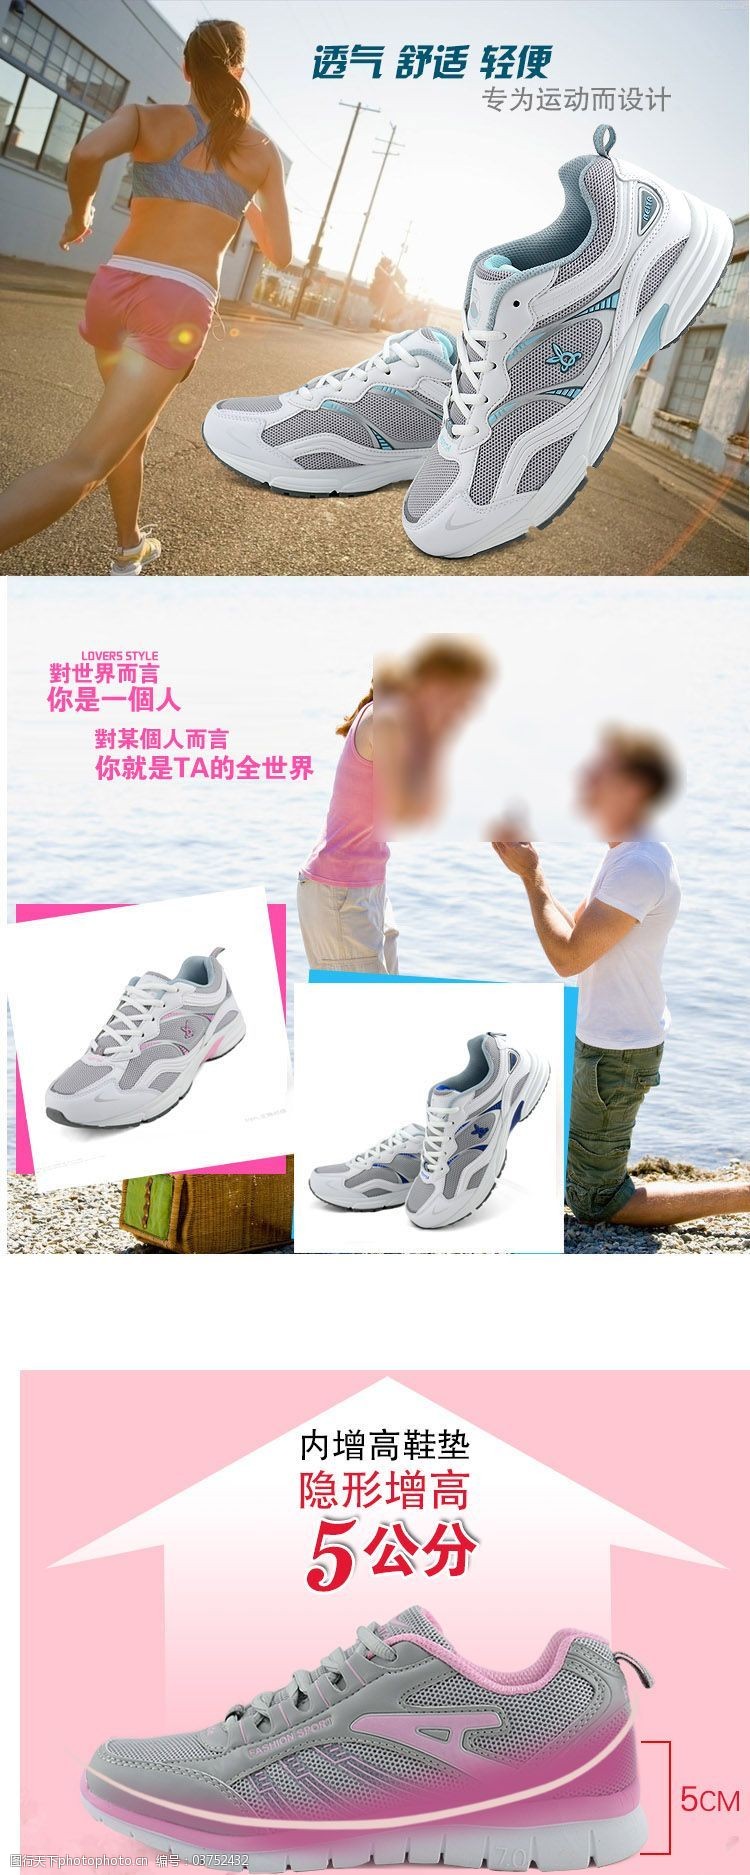 男女休闲鞋运动鞋跑步鞋鞋子淘宝宝贝详情页